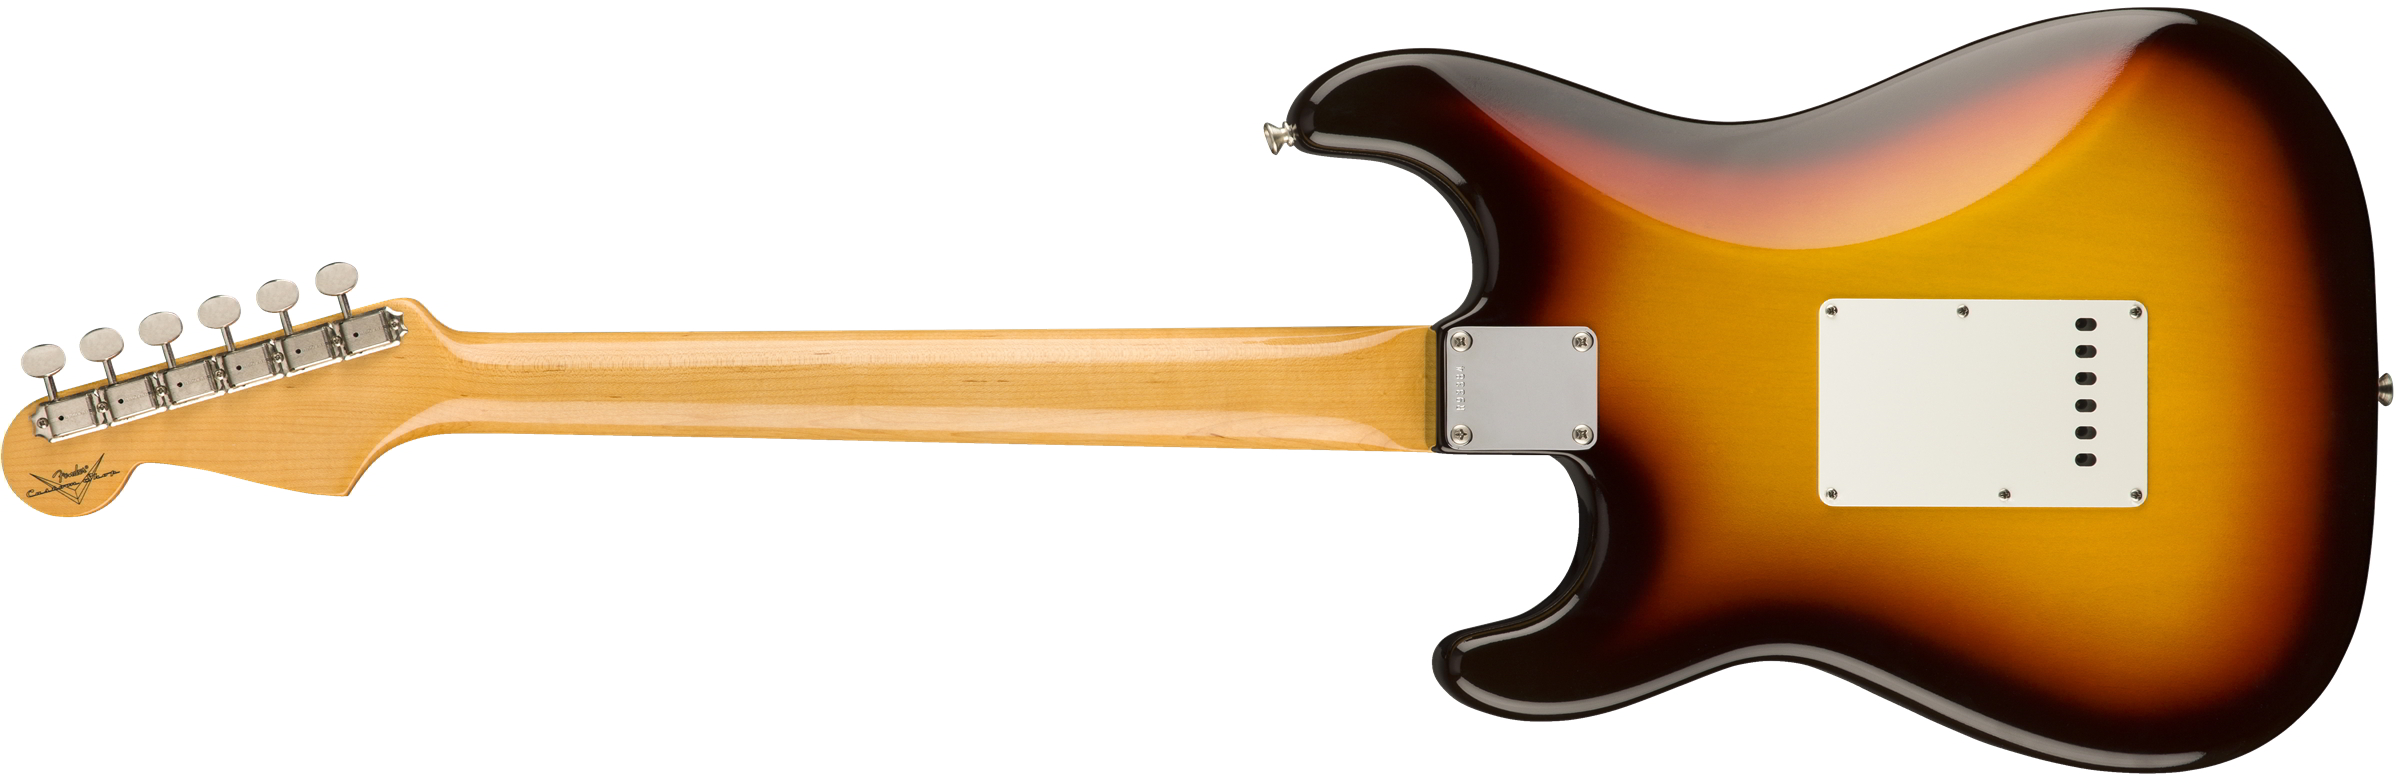 Vintage Custom 1959 Stratocaster NOS, Rosewood Fingerboard, Chocolate 3-Color Sunburst背面画像